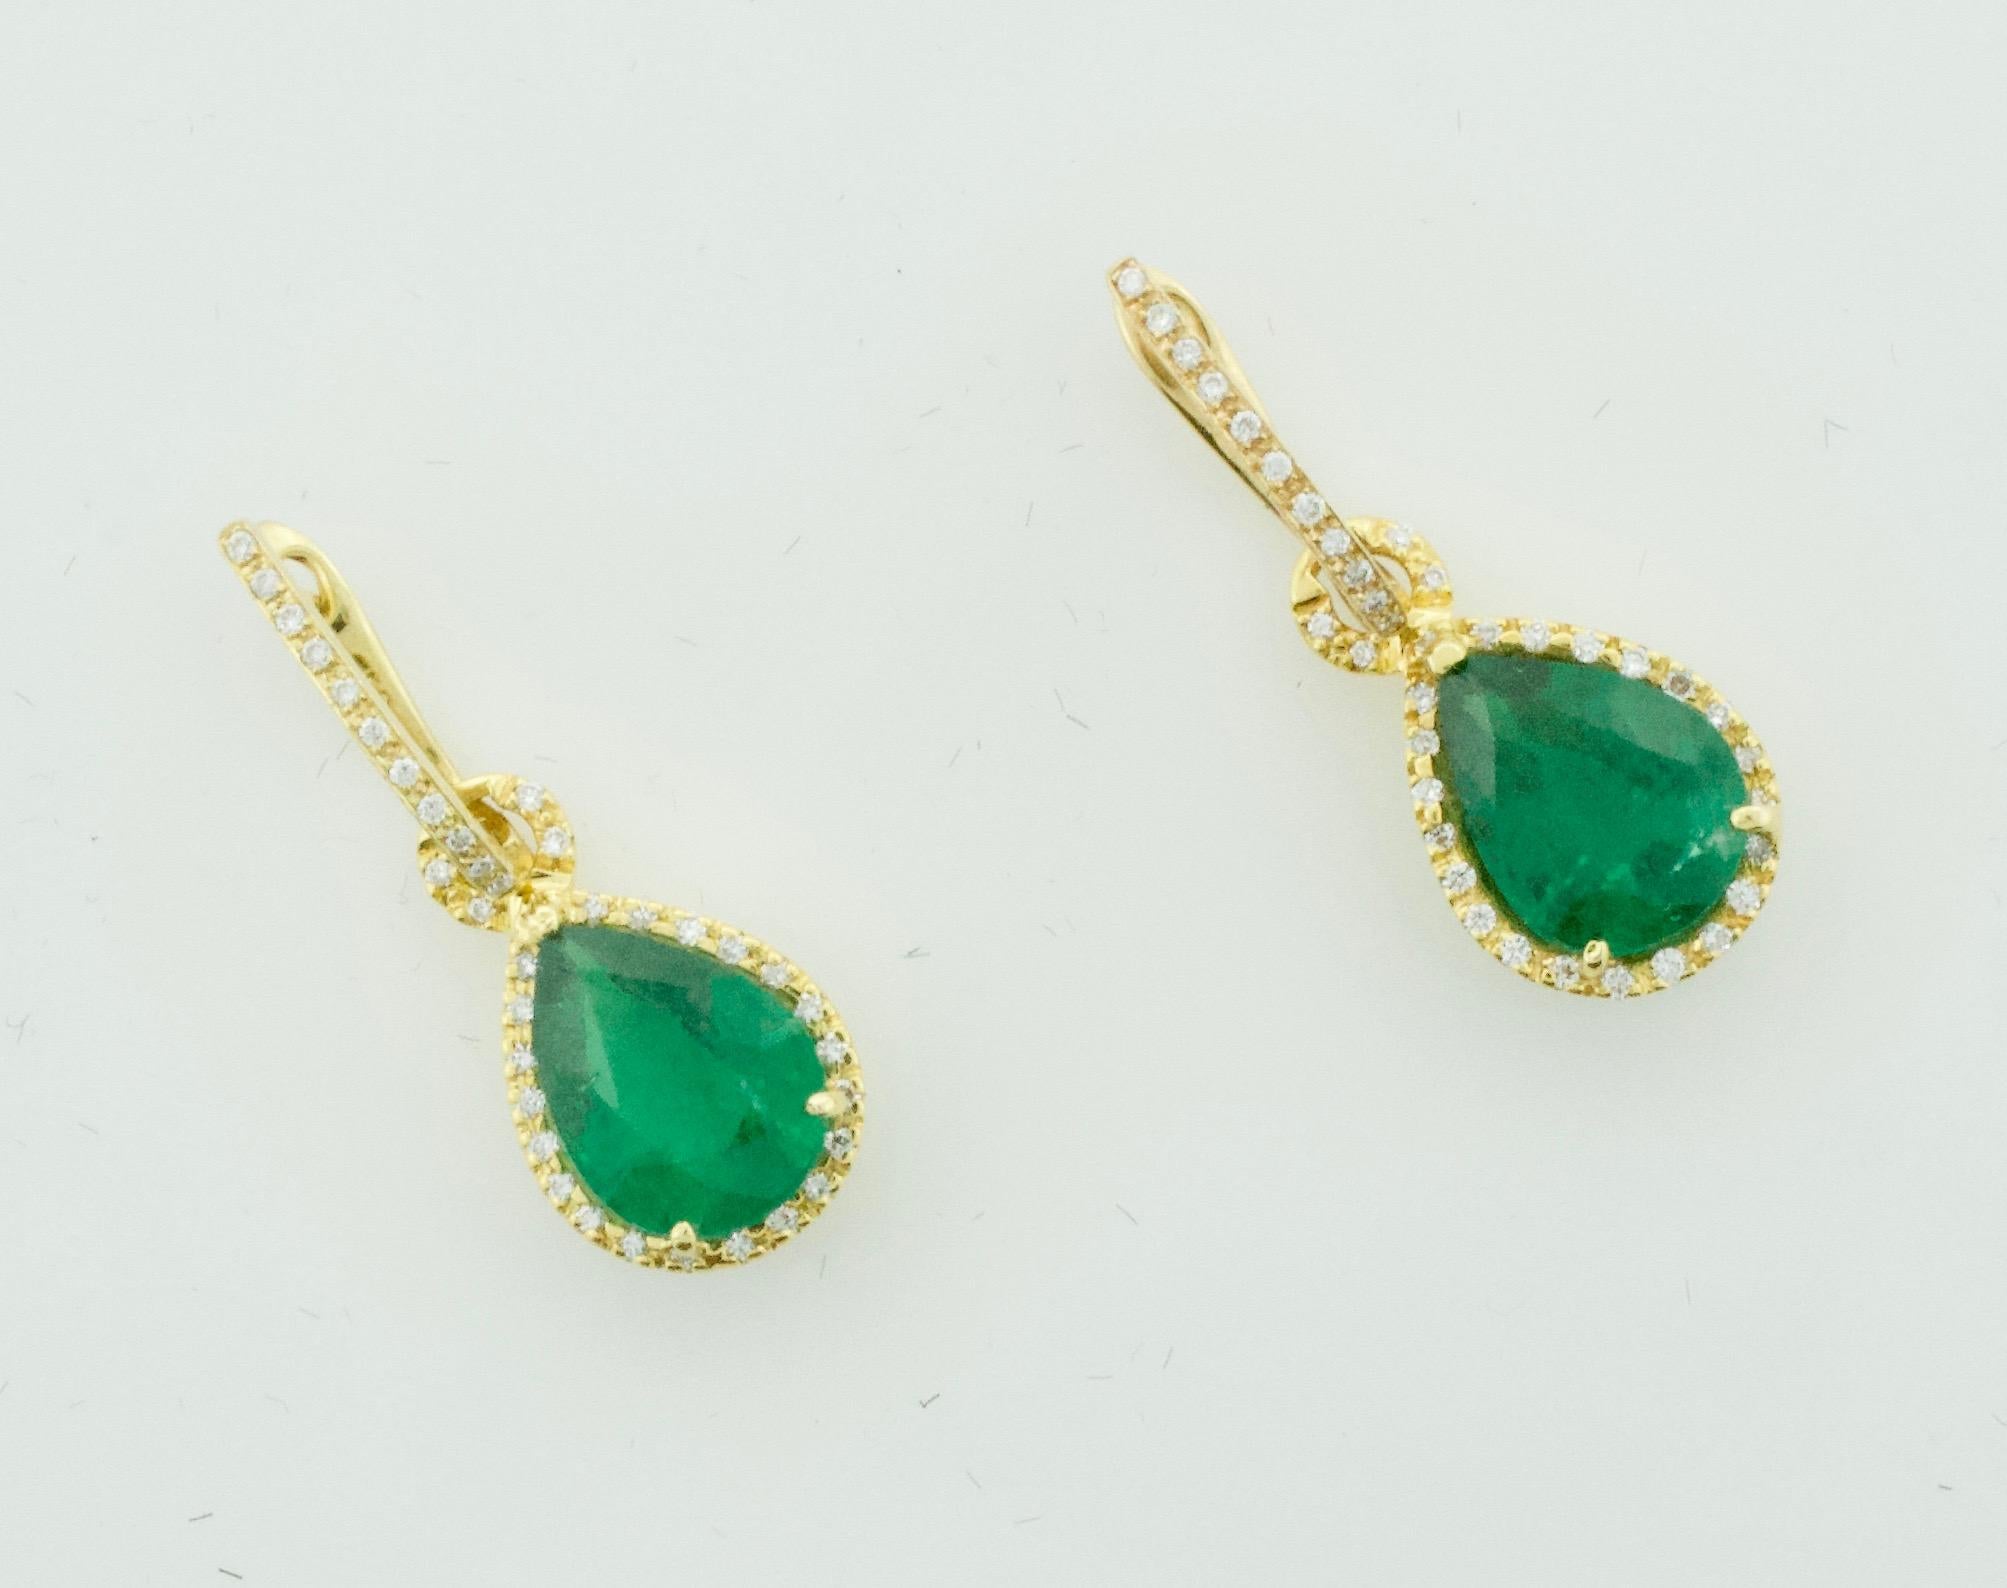 Pear Cut Pear Shaped Emerald and Diamond Earrings in 18 Karat